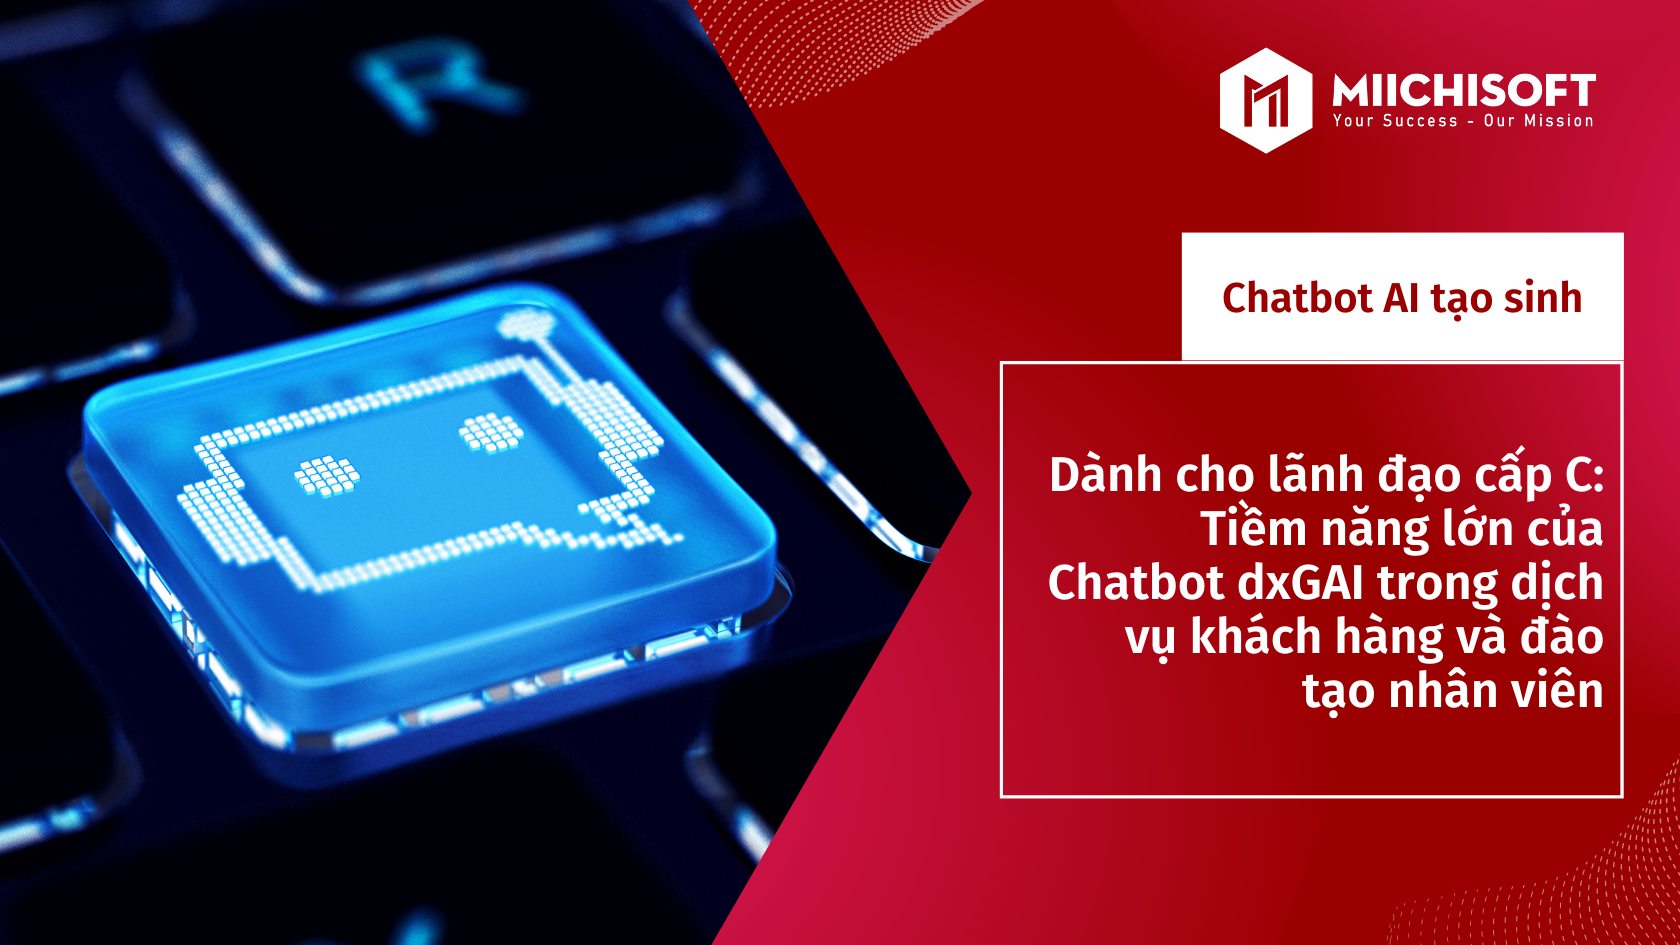 Dành cho lãnh đạo cấp C: Tiềm năng lớn của Chatbot dxGAI trong dịch vụ khách hàng và đào tạo nhân viên